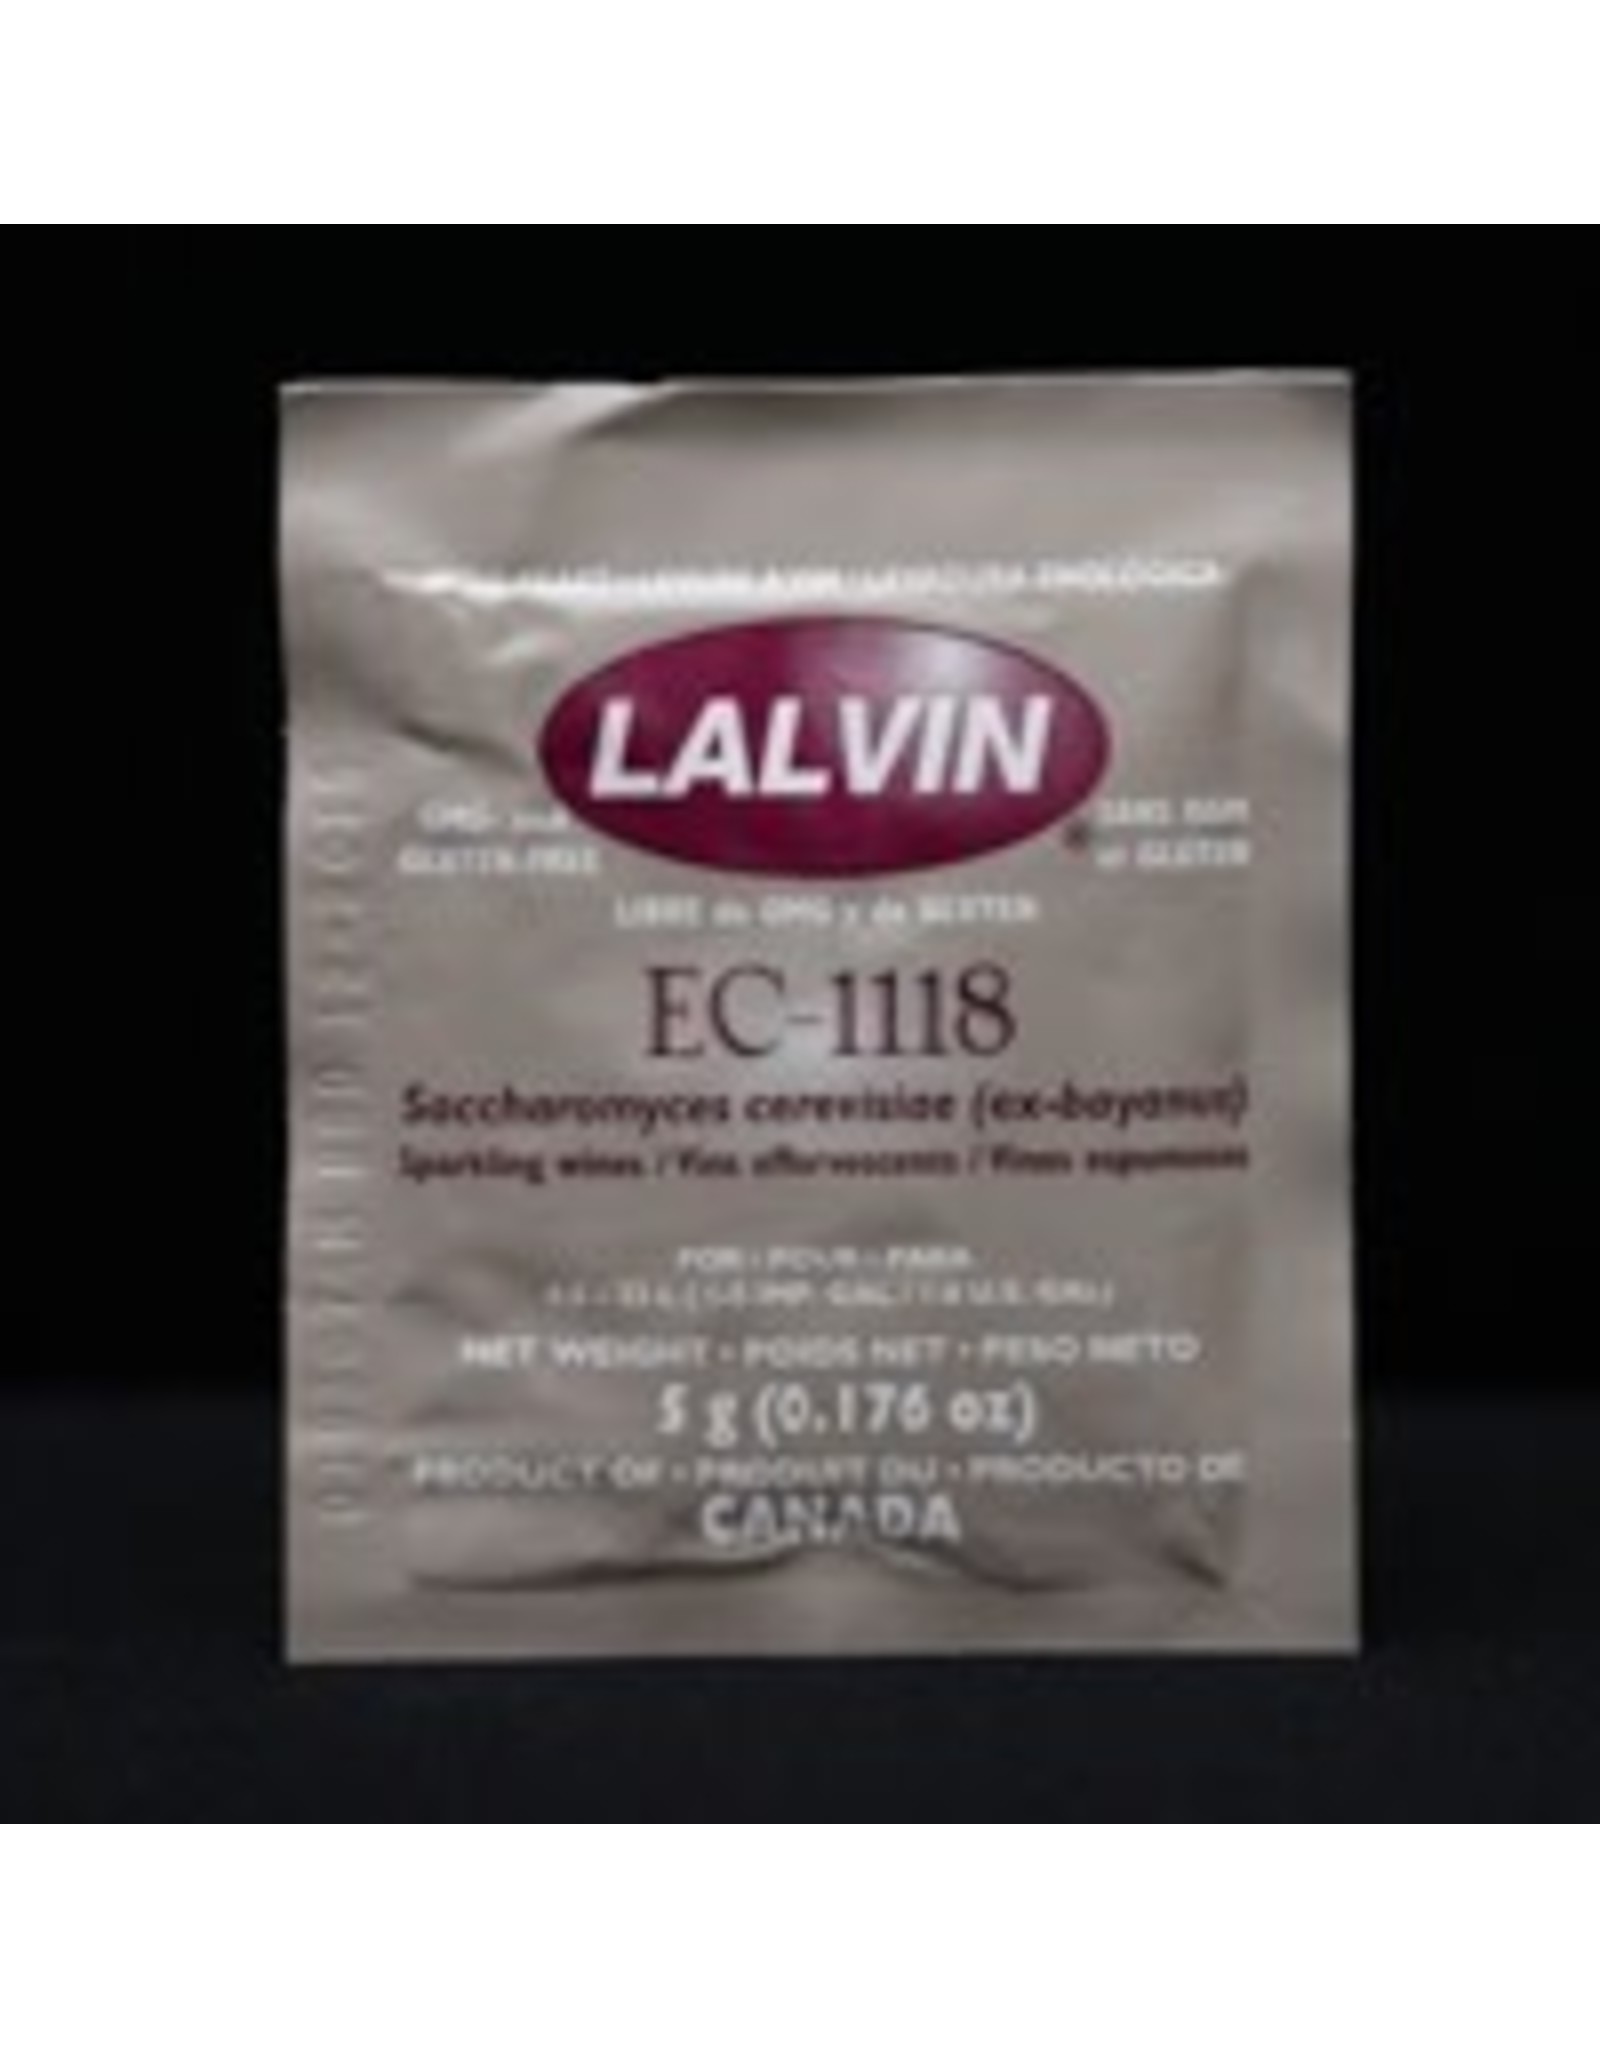 Lalvin Ec-1118 Wine Yeast